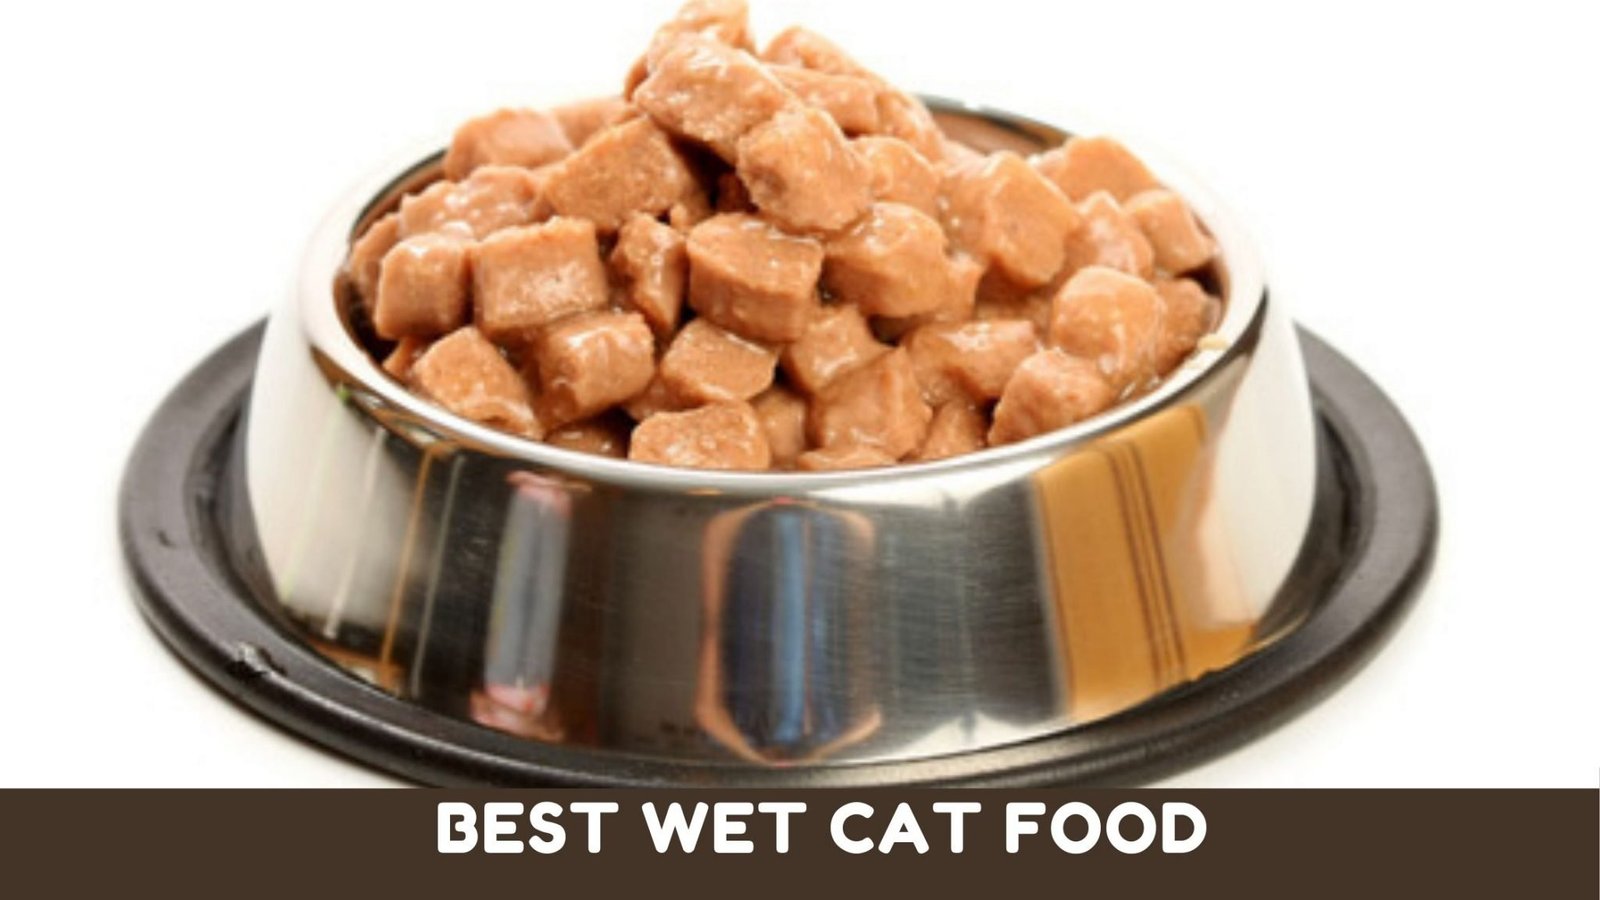 10 Best Wet Cat Foods For Indoor Cats Reviewed 2021 Kitten Passion